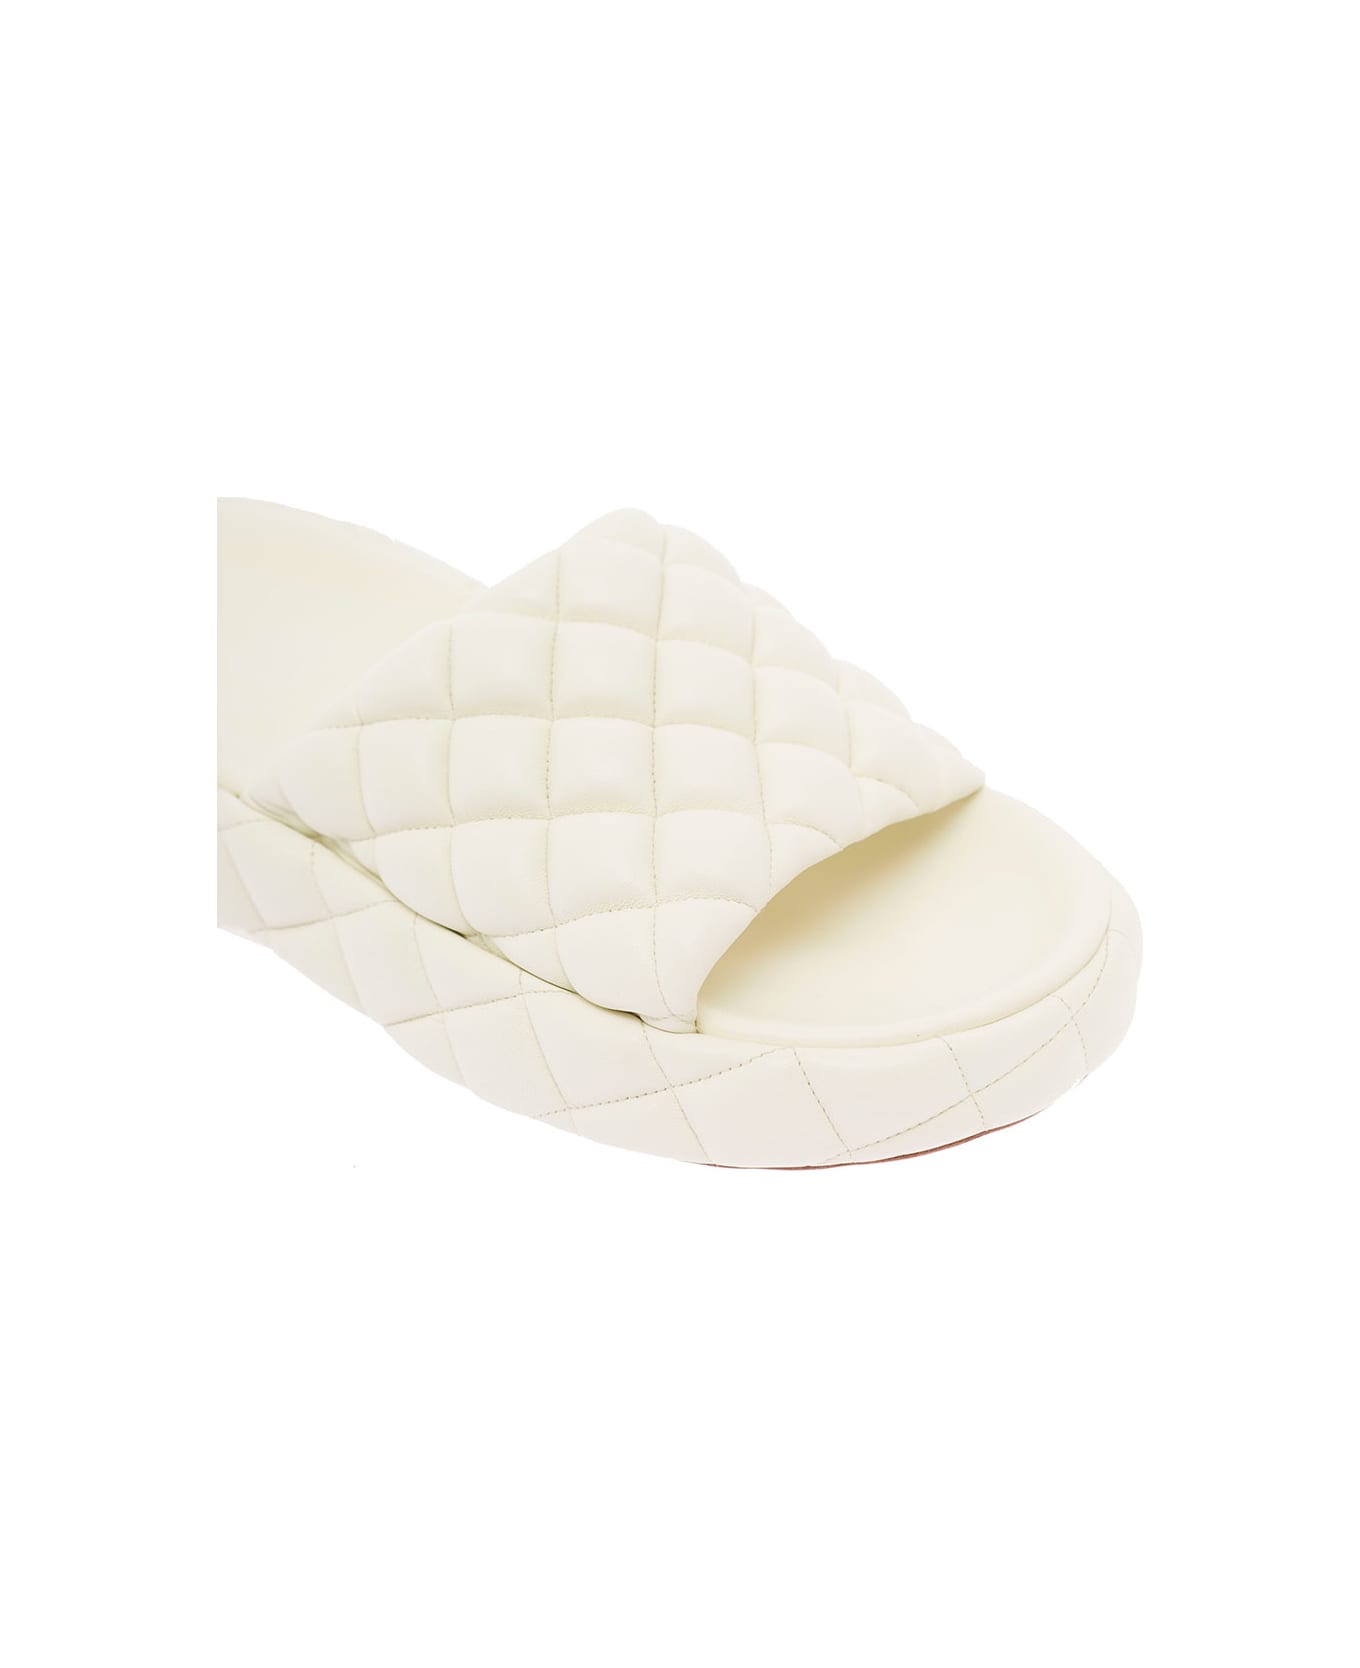 Bottega Veneta White Quilted Leather Slide Sandals Bottega Veneta Woman - White